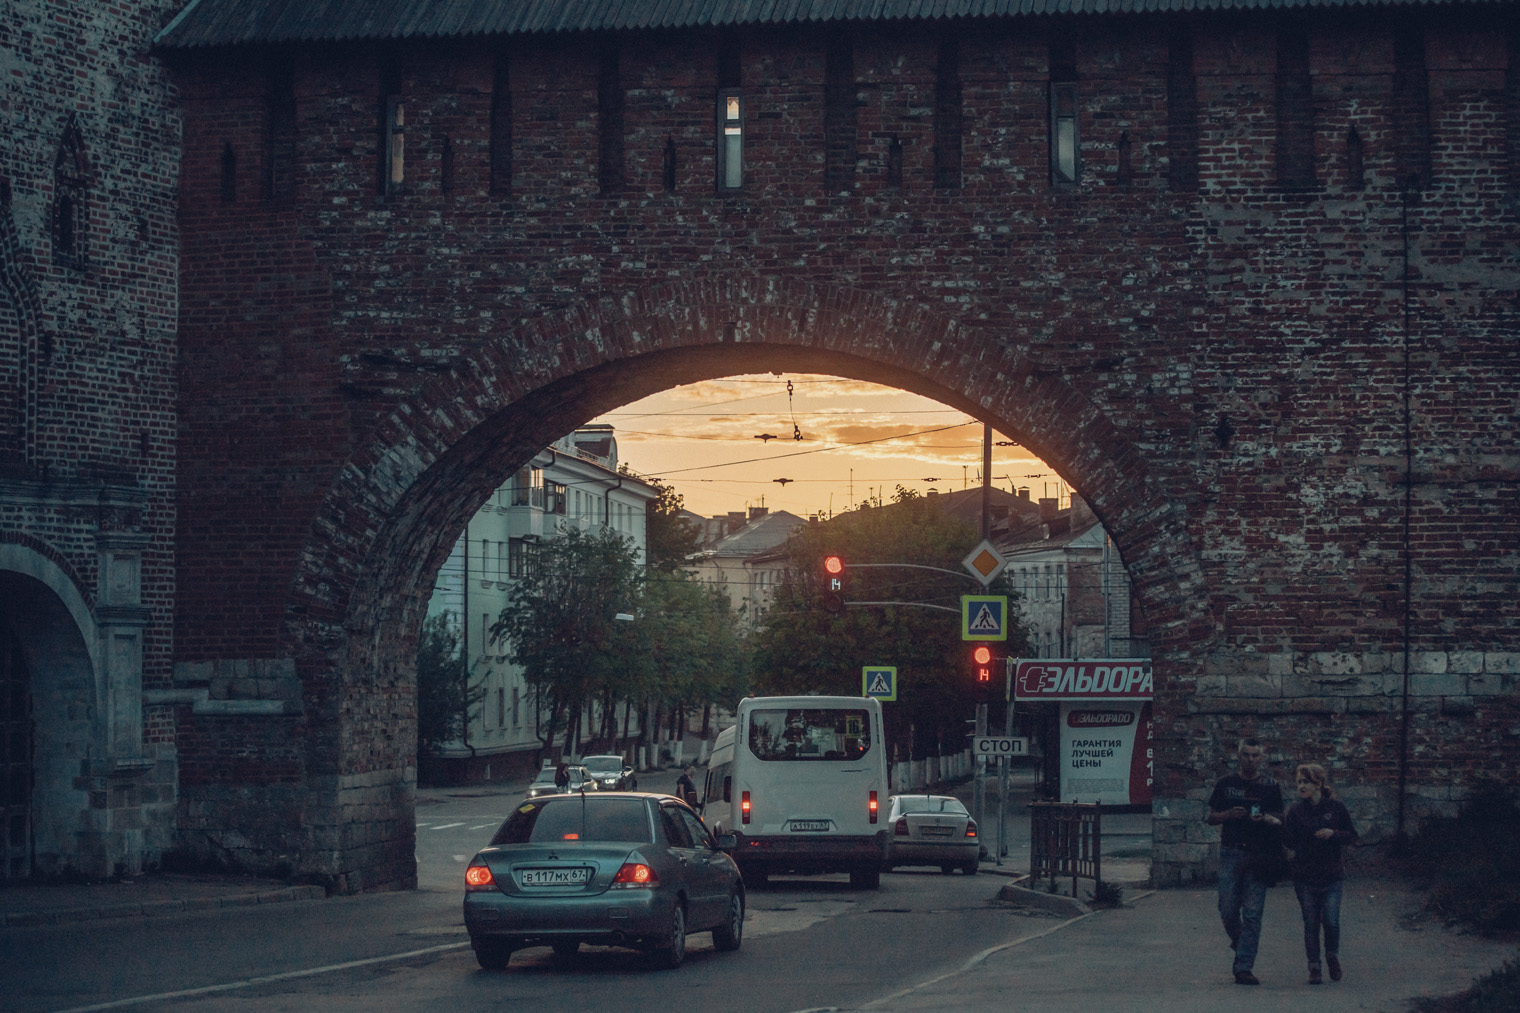 Никольские ворота — пыльная и шумная локация в стороне от основных пешеходных маршрутов. На закате место преображается